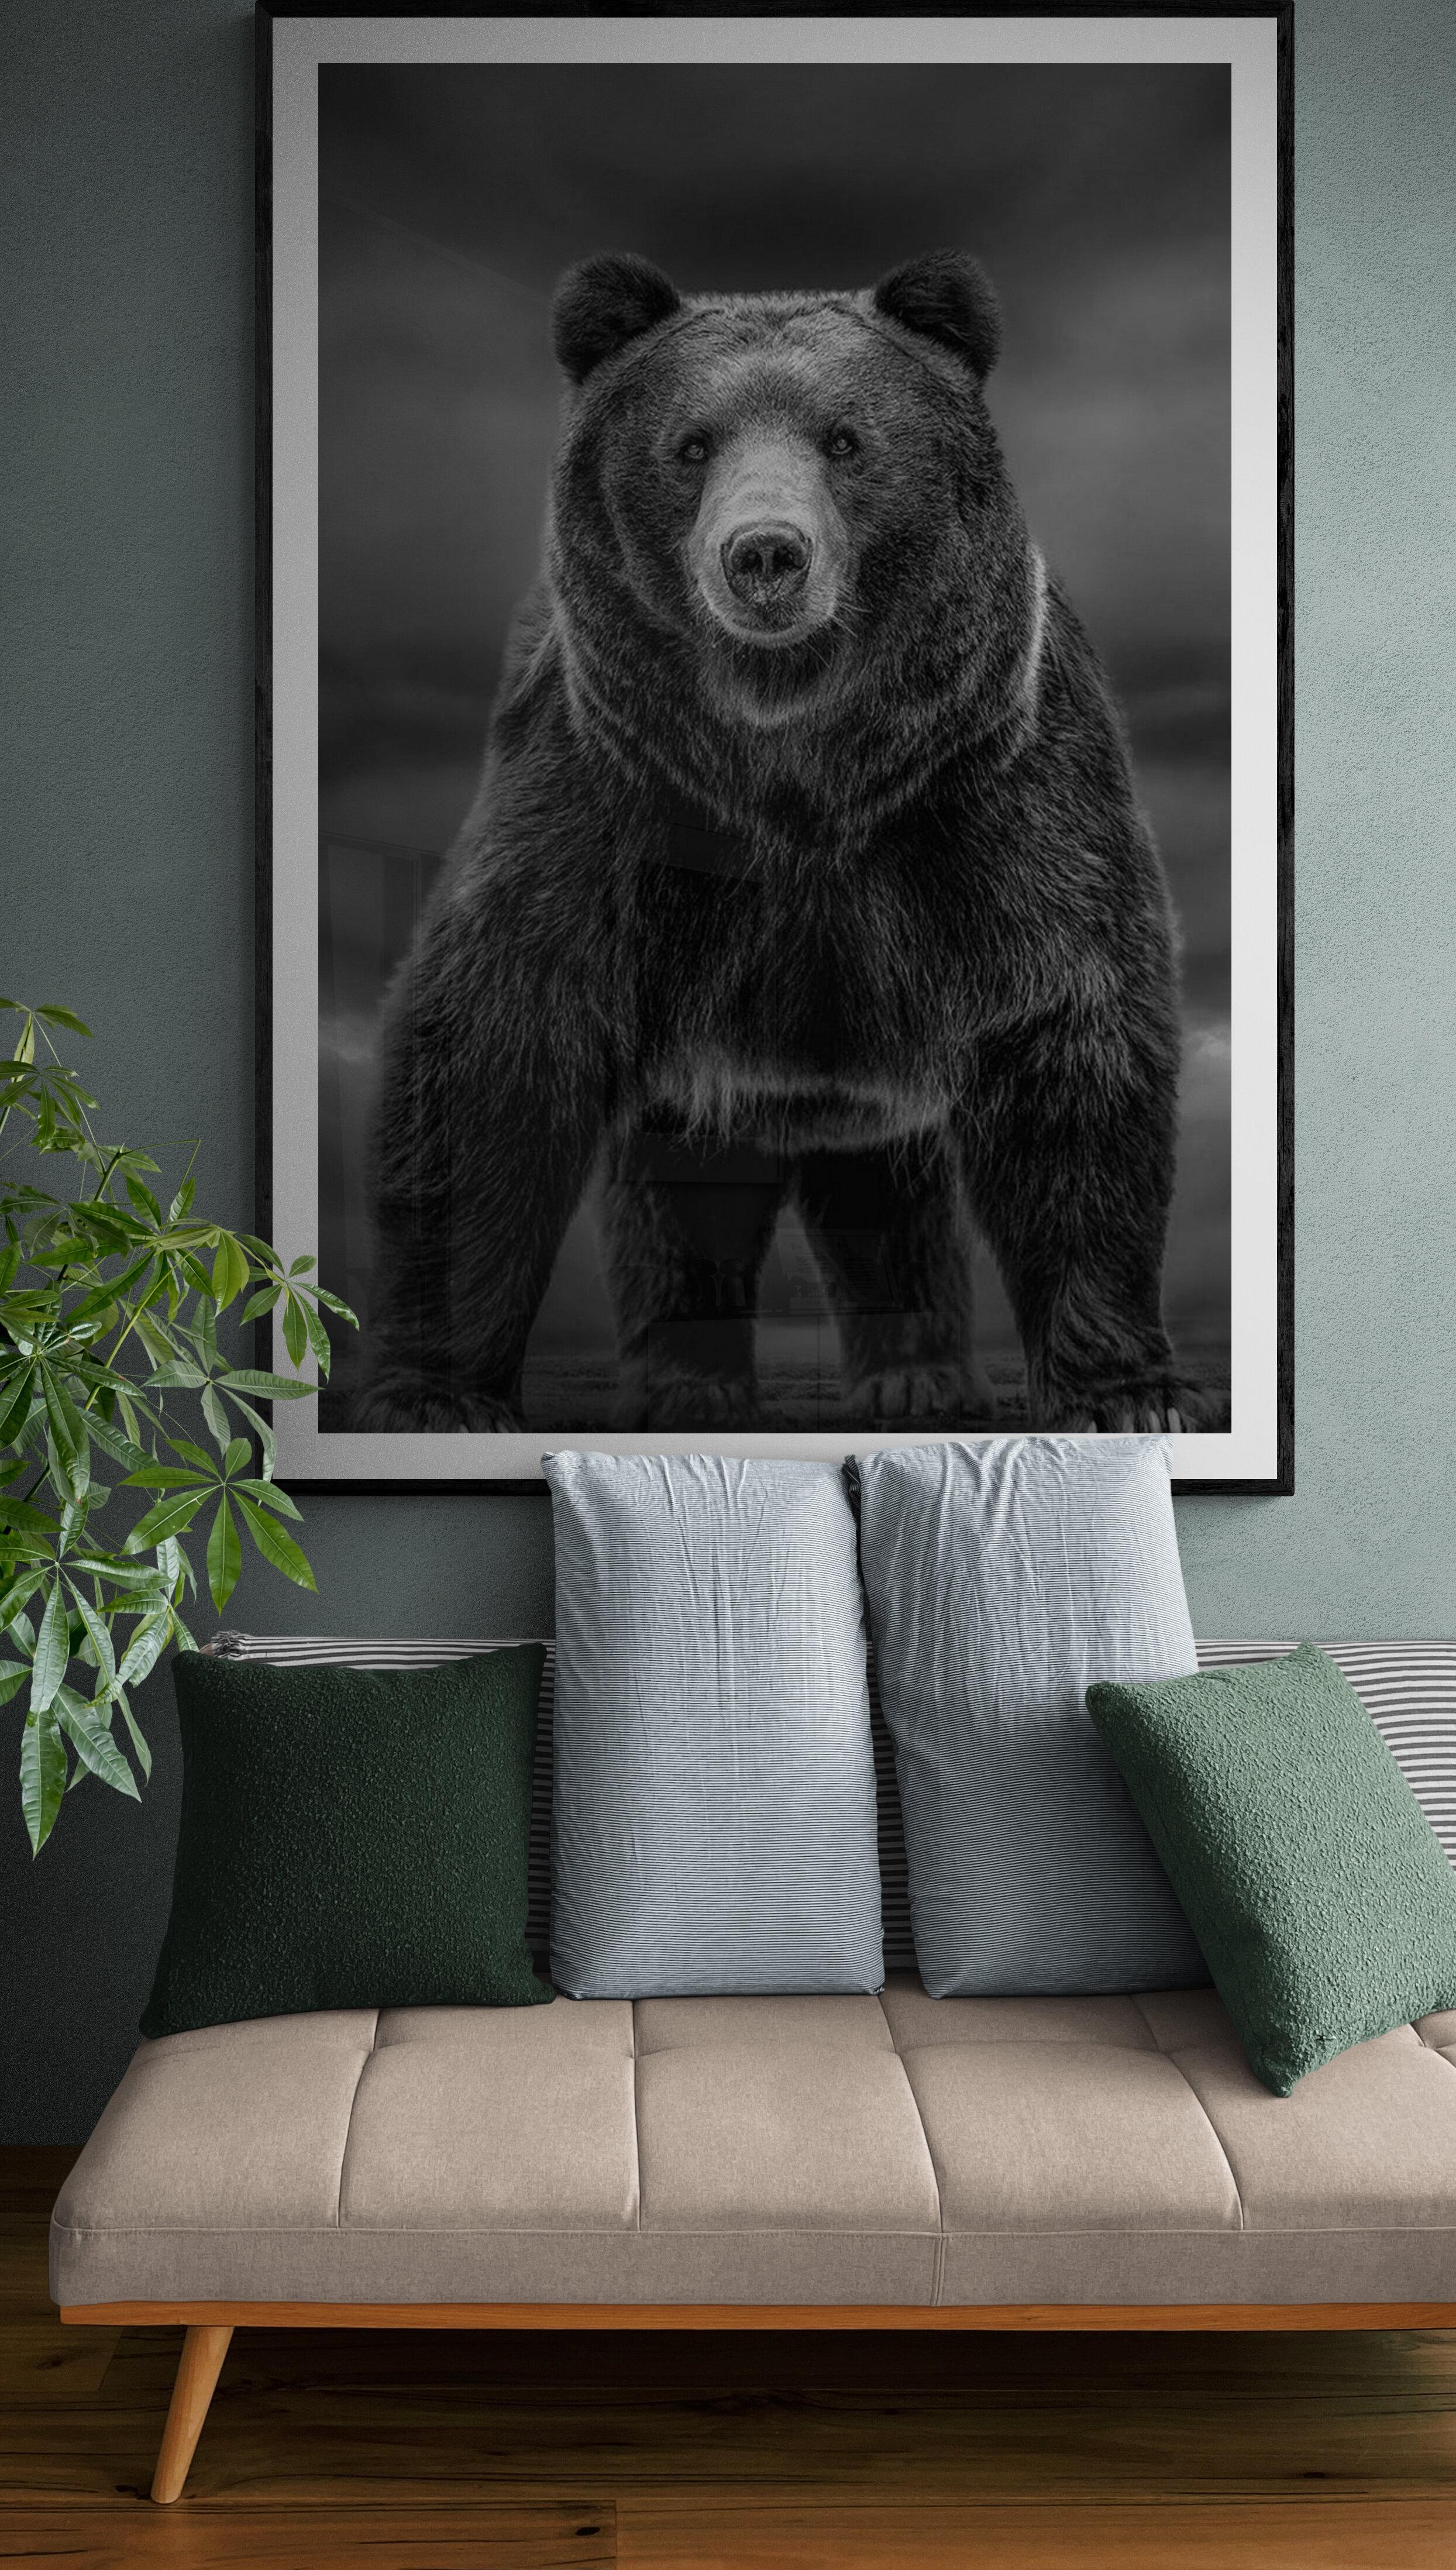 Il s'agit d'une photographie contemporaine d'un ours Kodiak.  Ceci a été tourné sur l'île de Kodiak en 2019. 
60x40 
Edition de 10
Signé et numéroté
Papier pigmentaire d'archivage
Encadrement disponible. Renseignez-vous sur les tarifs. 


Shane